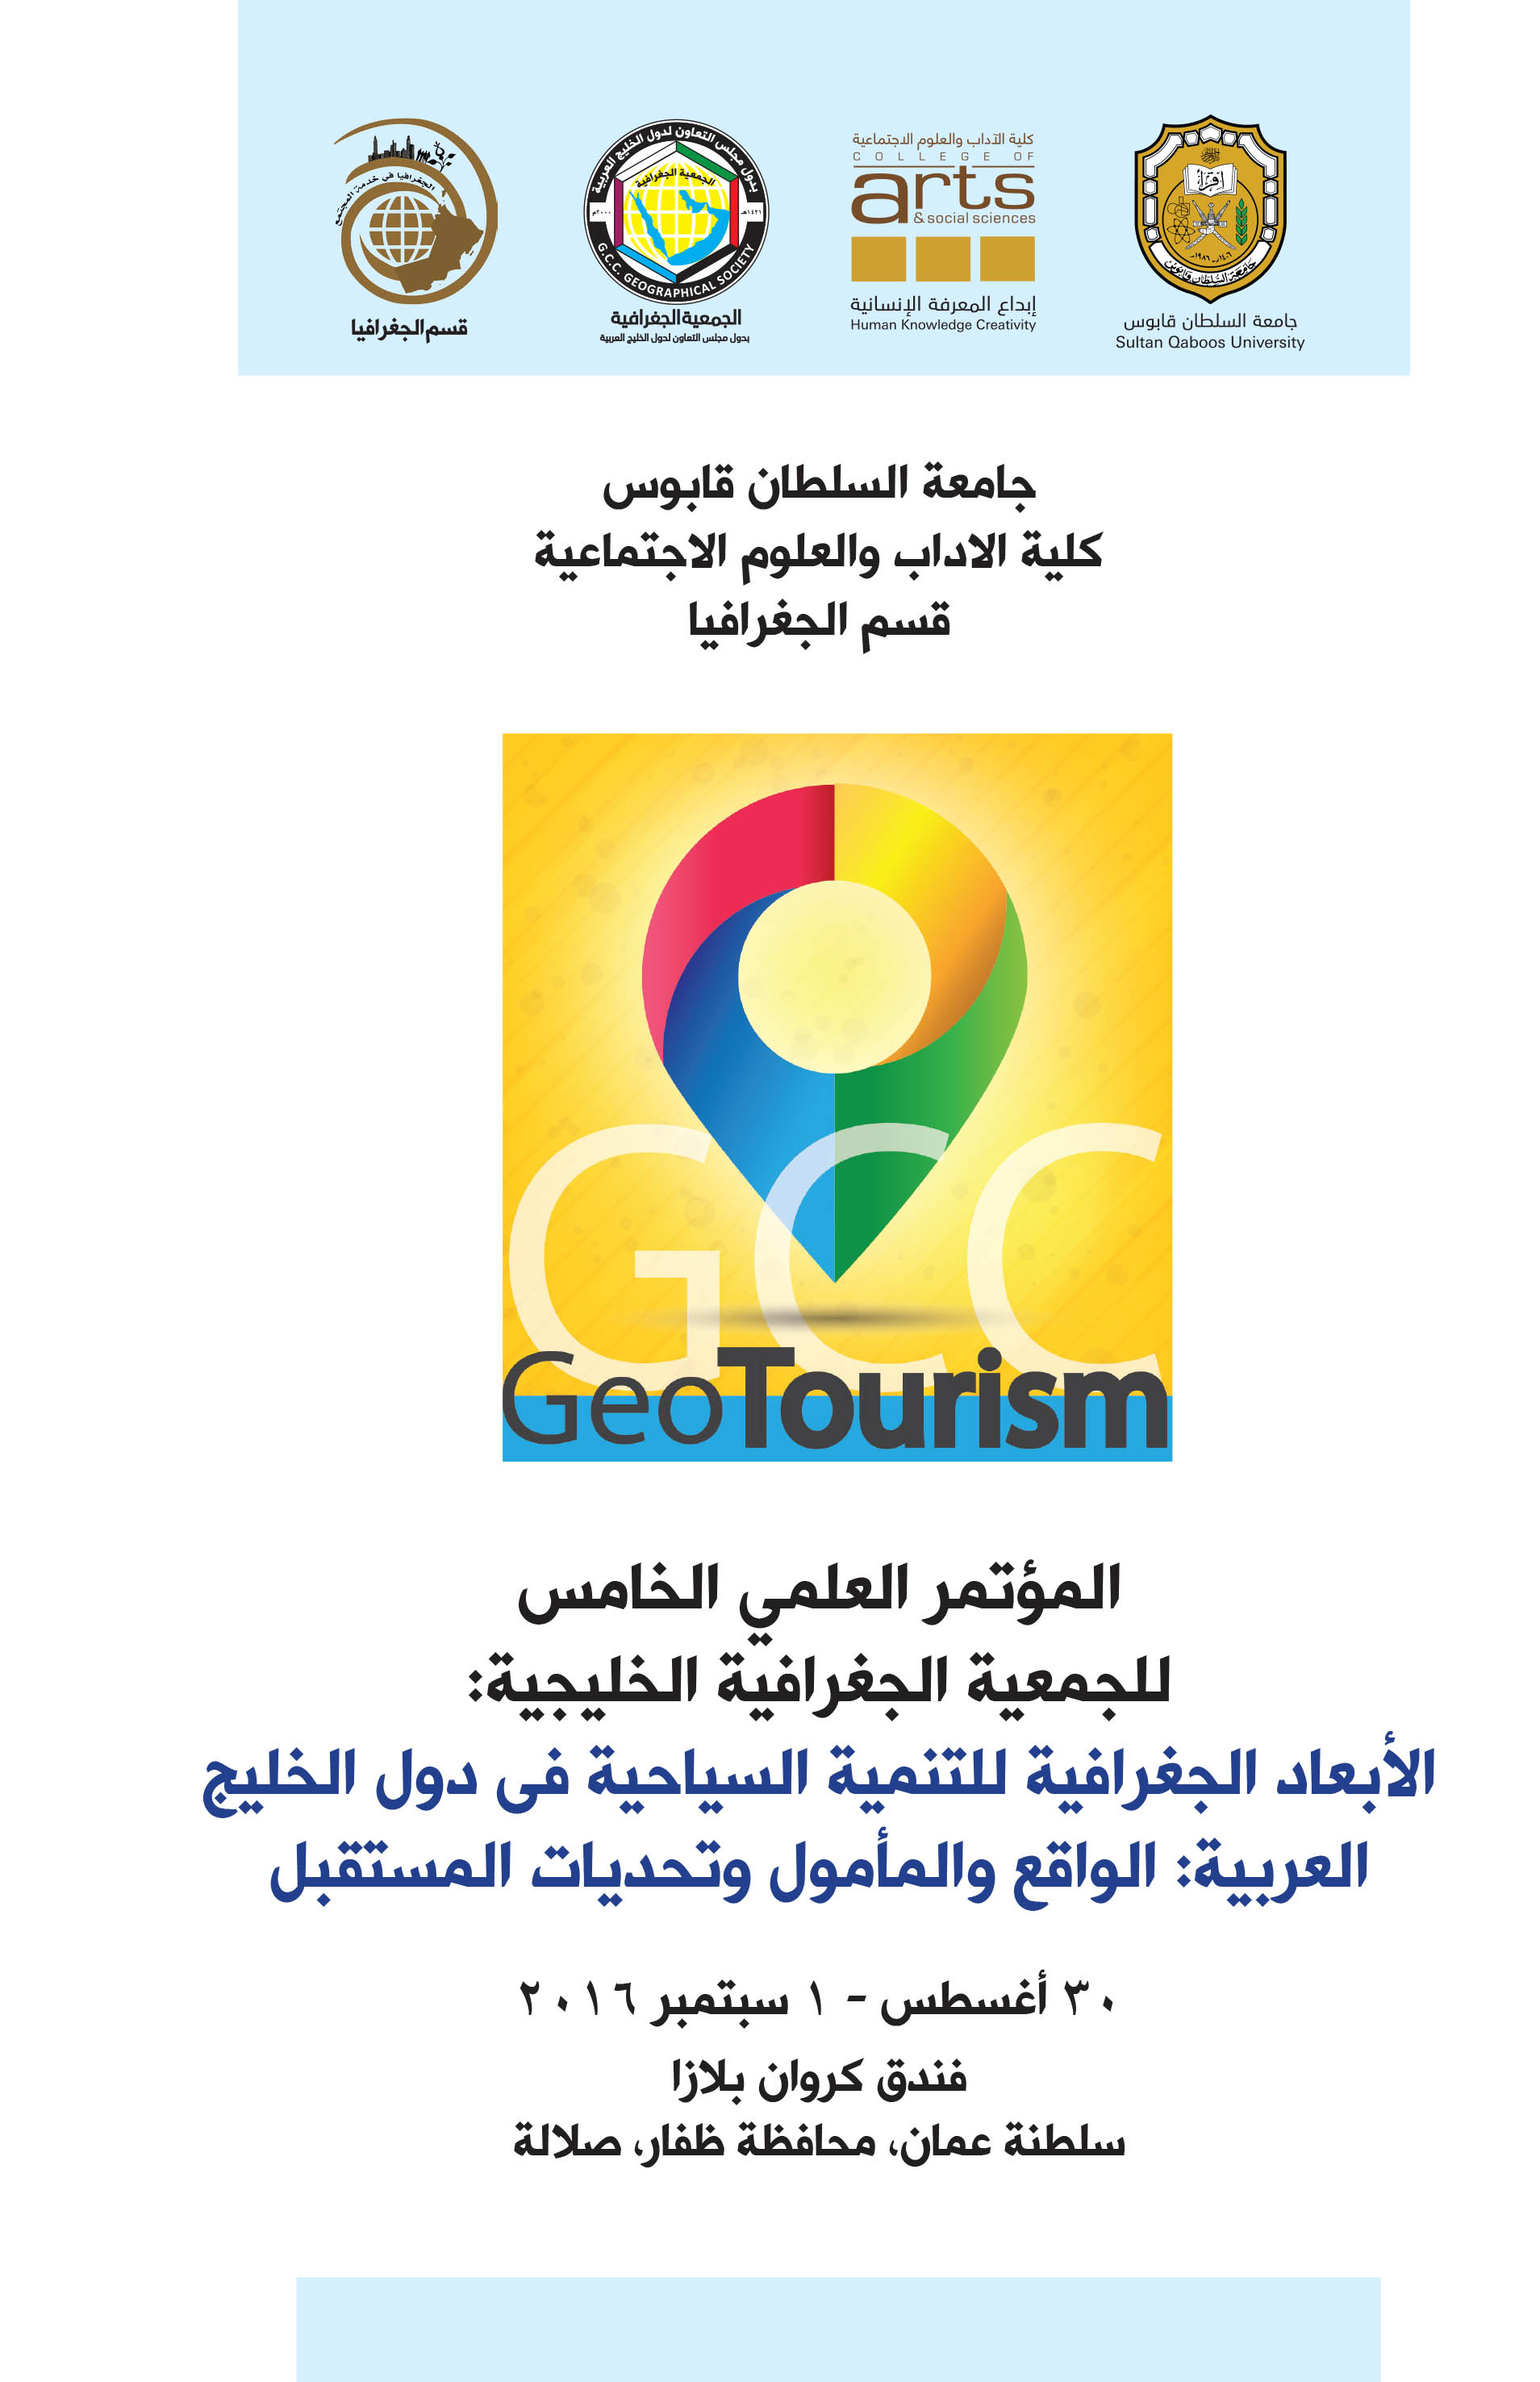 الثلاثاء المقبل .. السلطنة تستضيف المؤتمر العلمي الخامس للجمعية الجغرافية الخليجية